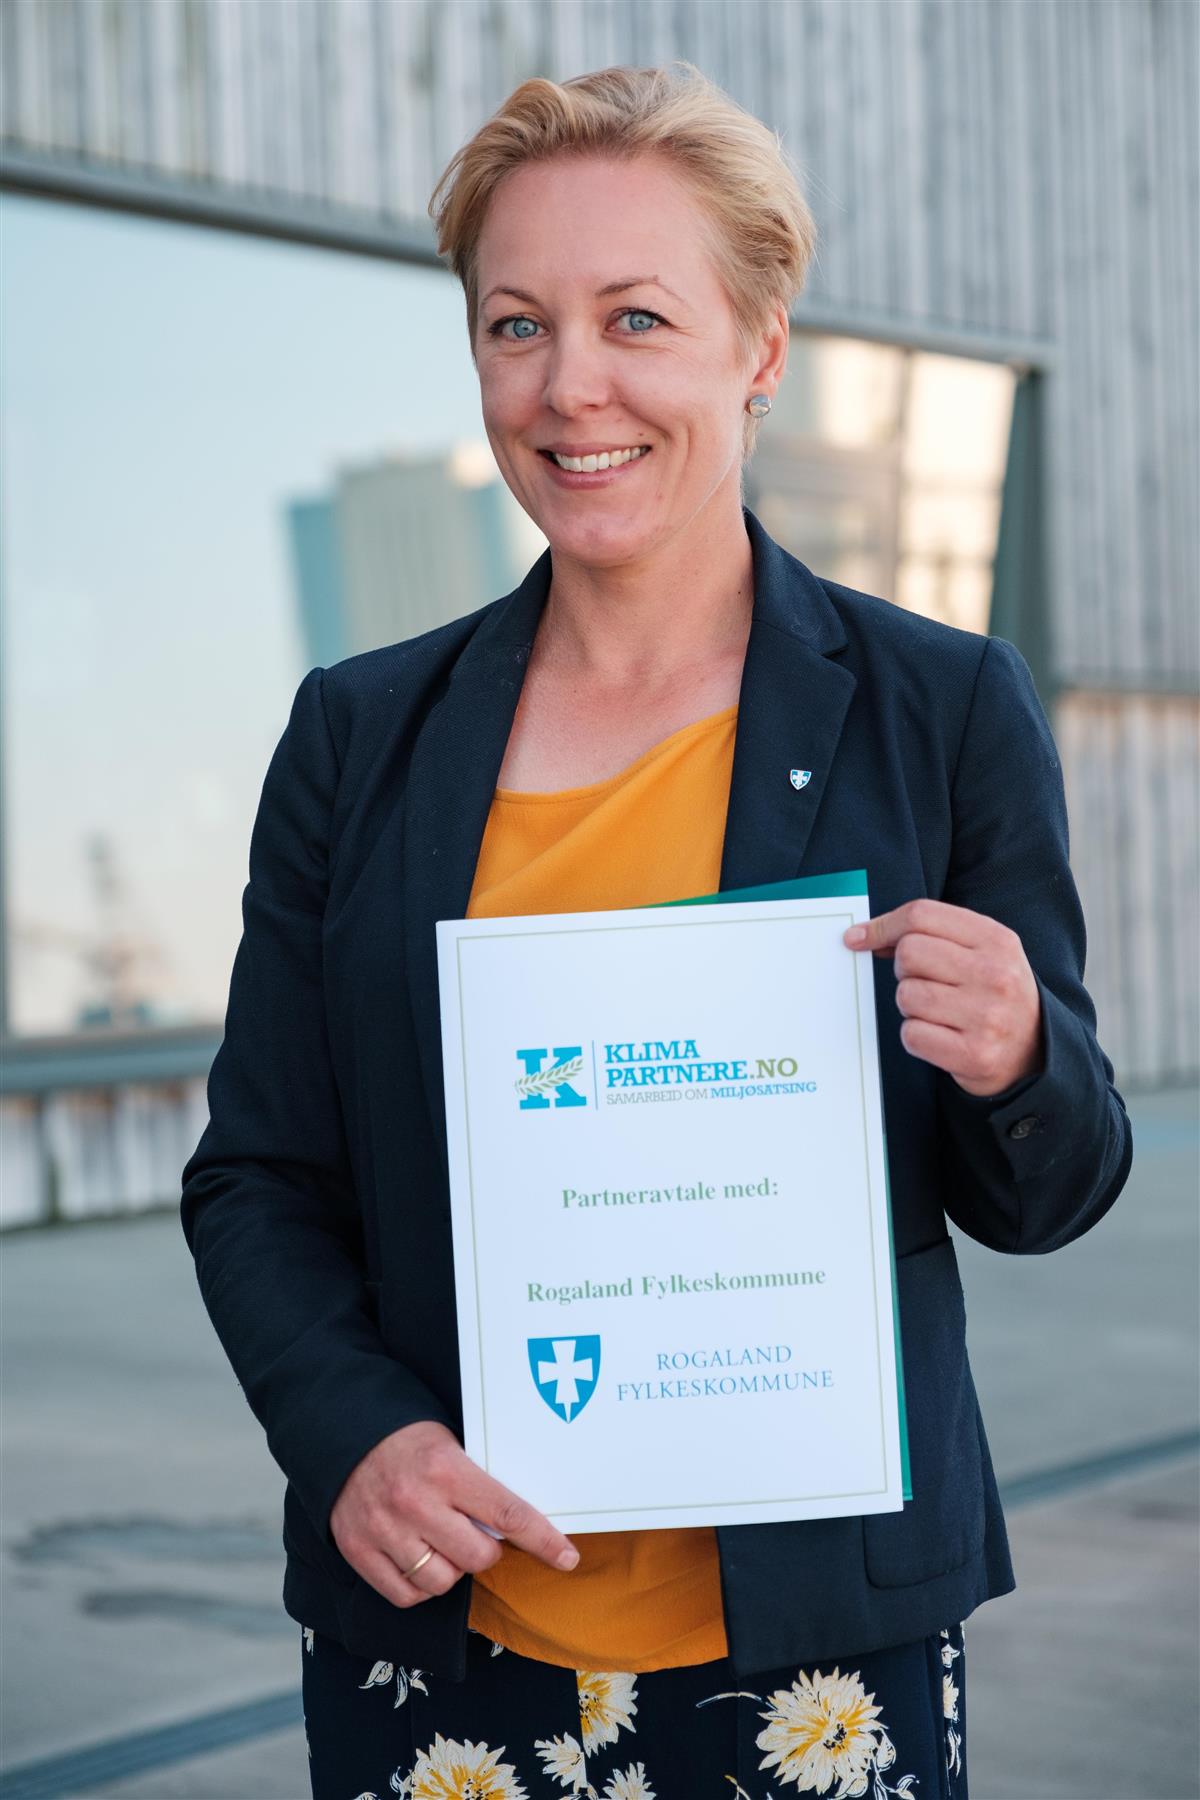 Fylkesordfører Marianne Chesak med diplom som viser at Rogaland fylkeskommune er Klimapartner - Klikk for stort bilde